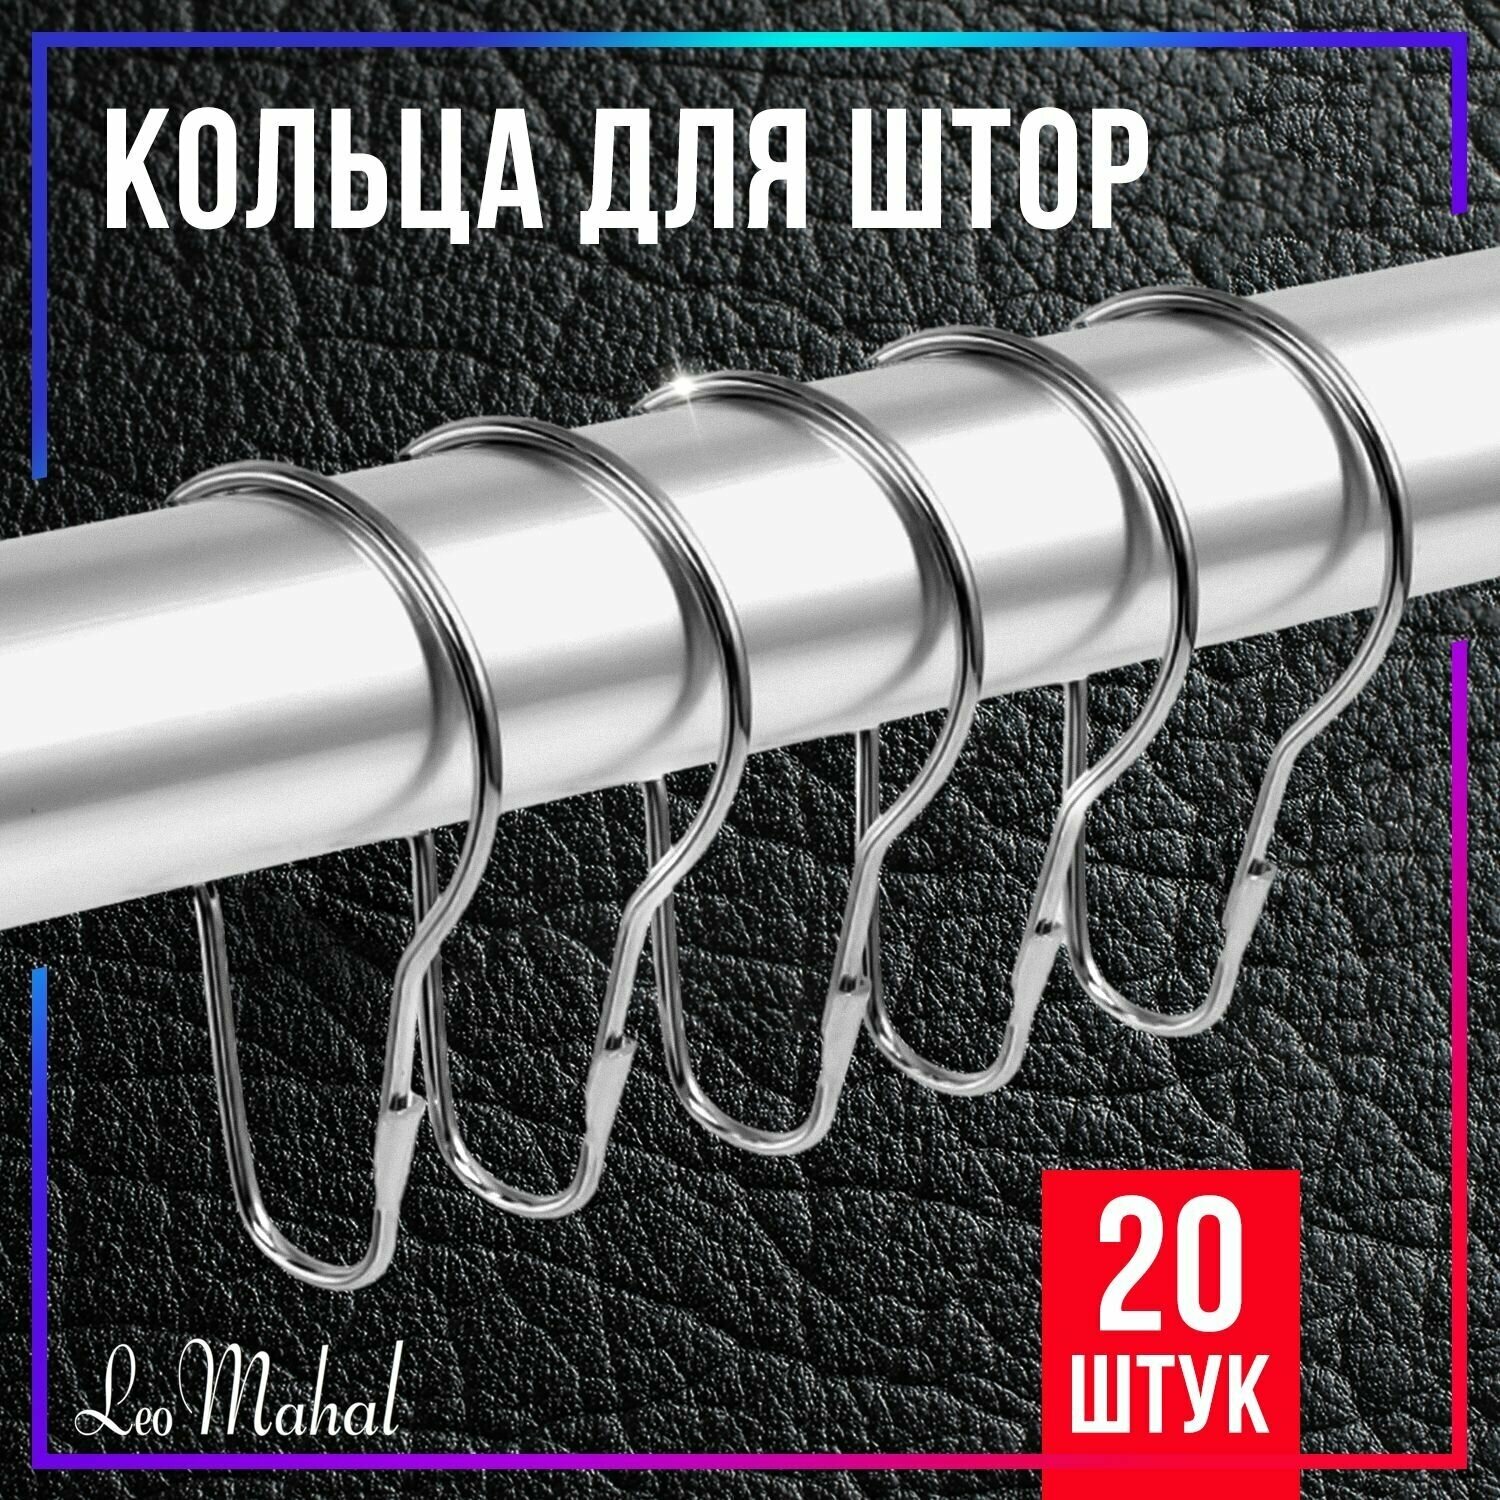 Кольца для штор металлические зажимы для карниза держатели для занавесок крючки на штангу для шторки аксессуары в ванную комнату набор 20 шт